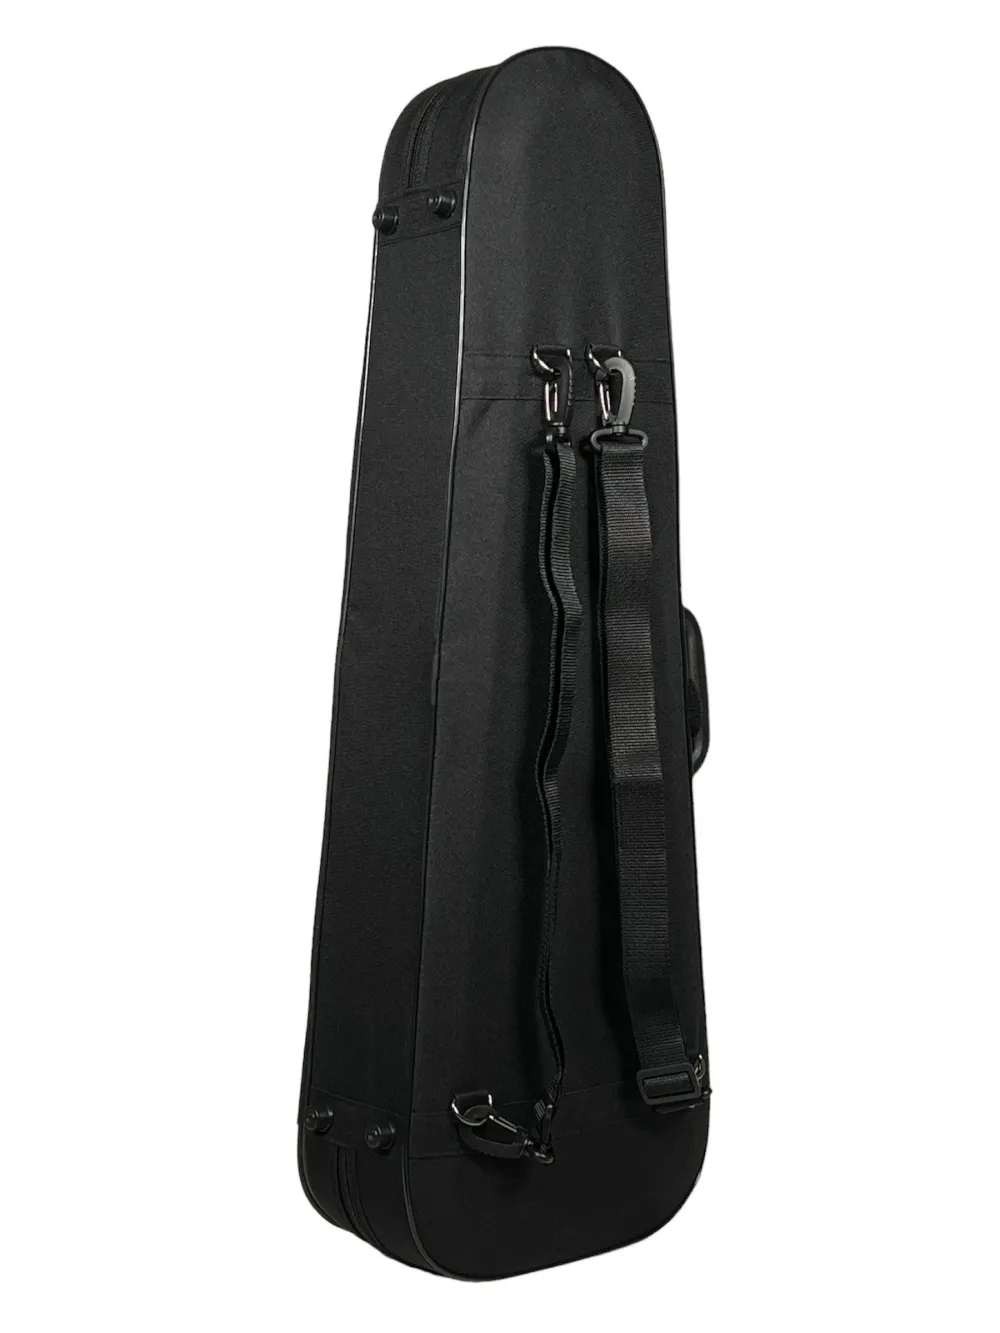 Detailansicht von unten mit Rcksackgurte eines Petz Violin (Geige) Form Etuis mit Schulterstützenfach in der Farbe außen schwarz, innen grün